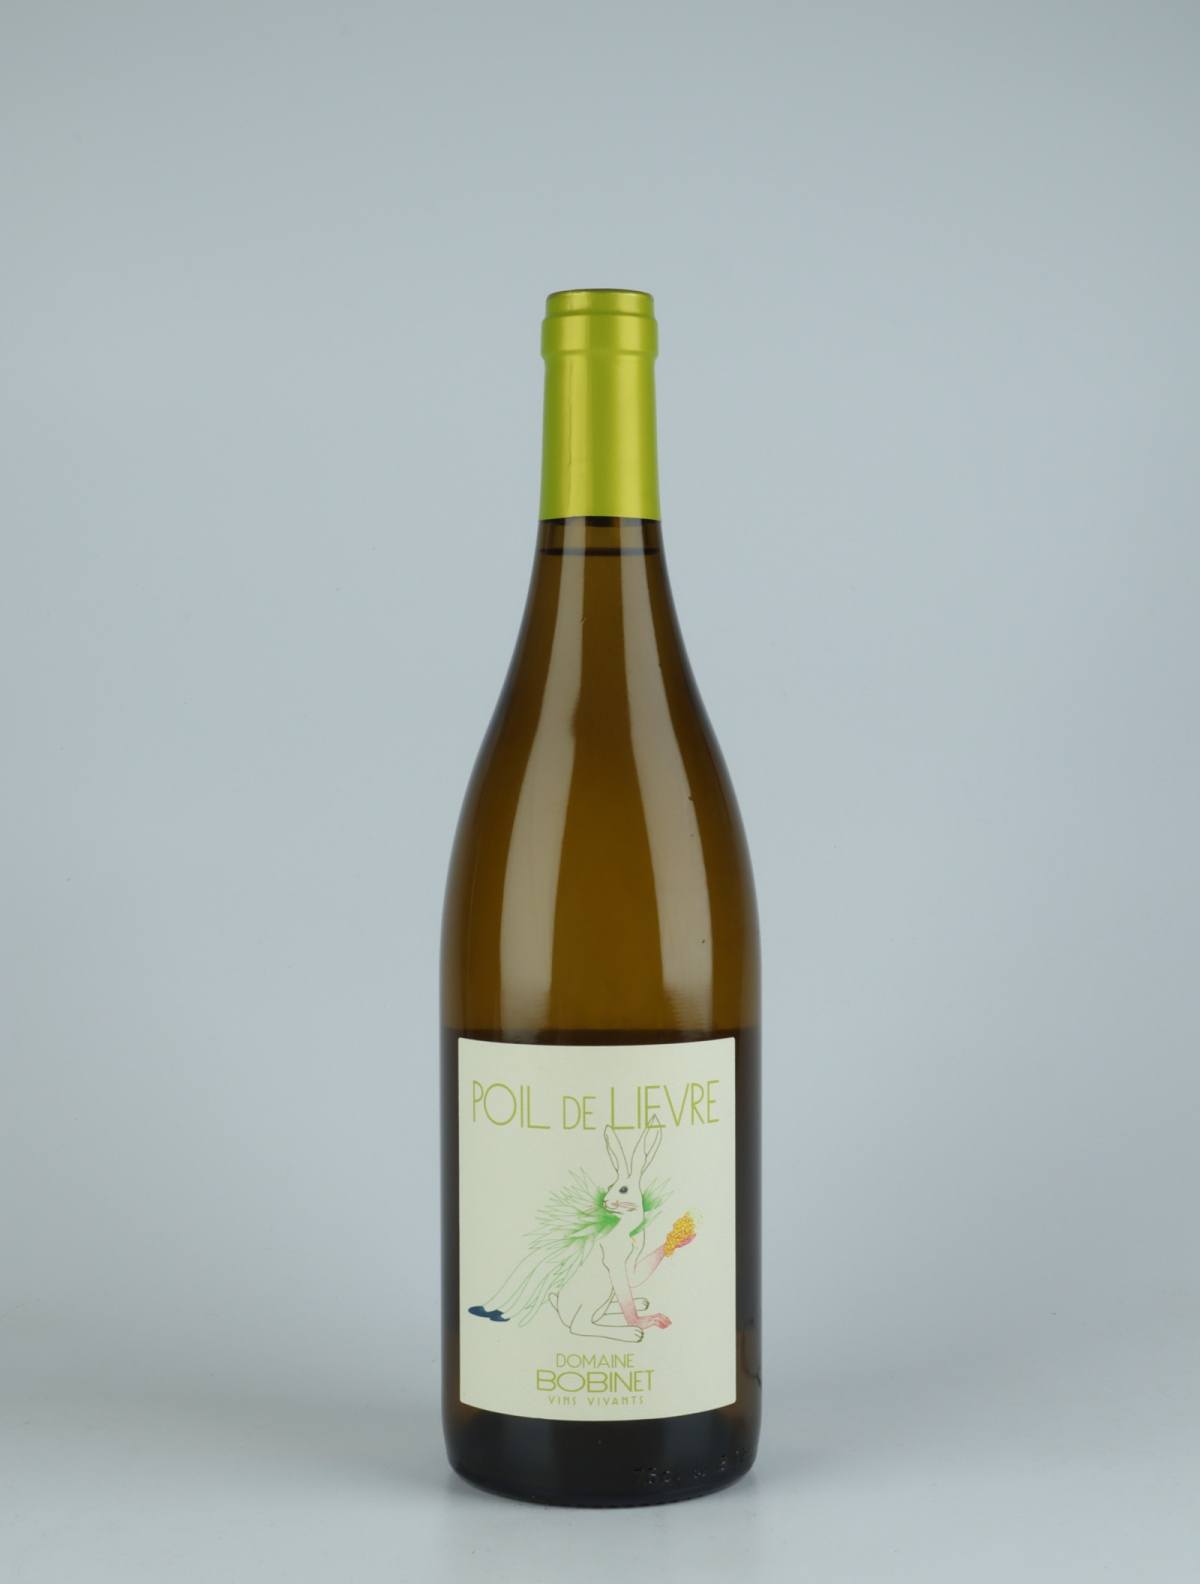 A bottle 2020 Saumur Blanc - Poil de Lièvre White wine from Domaine Bobinet, Loire in France